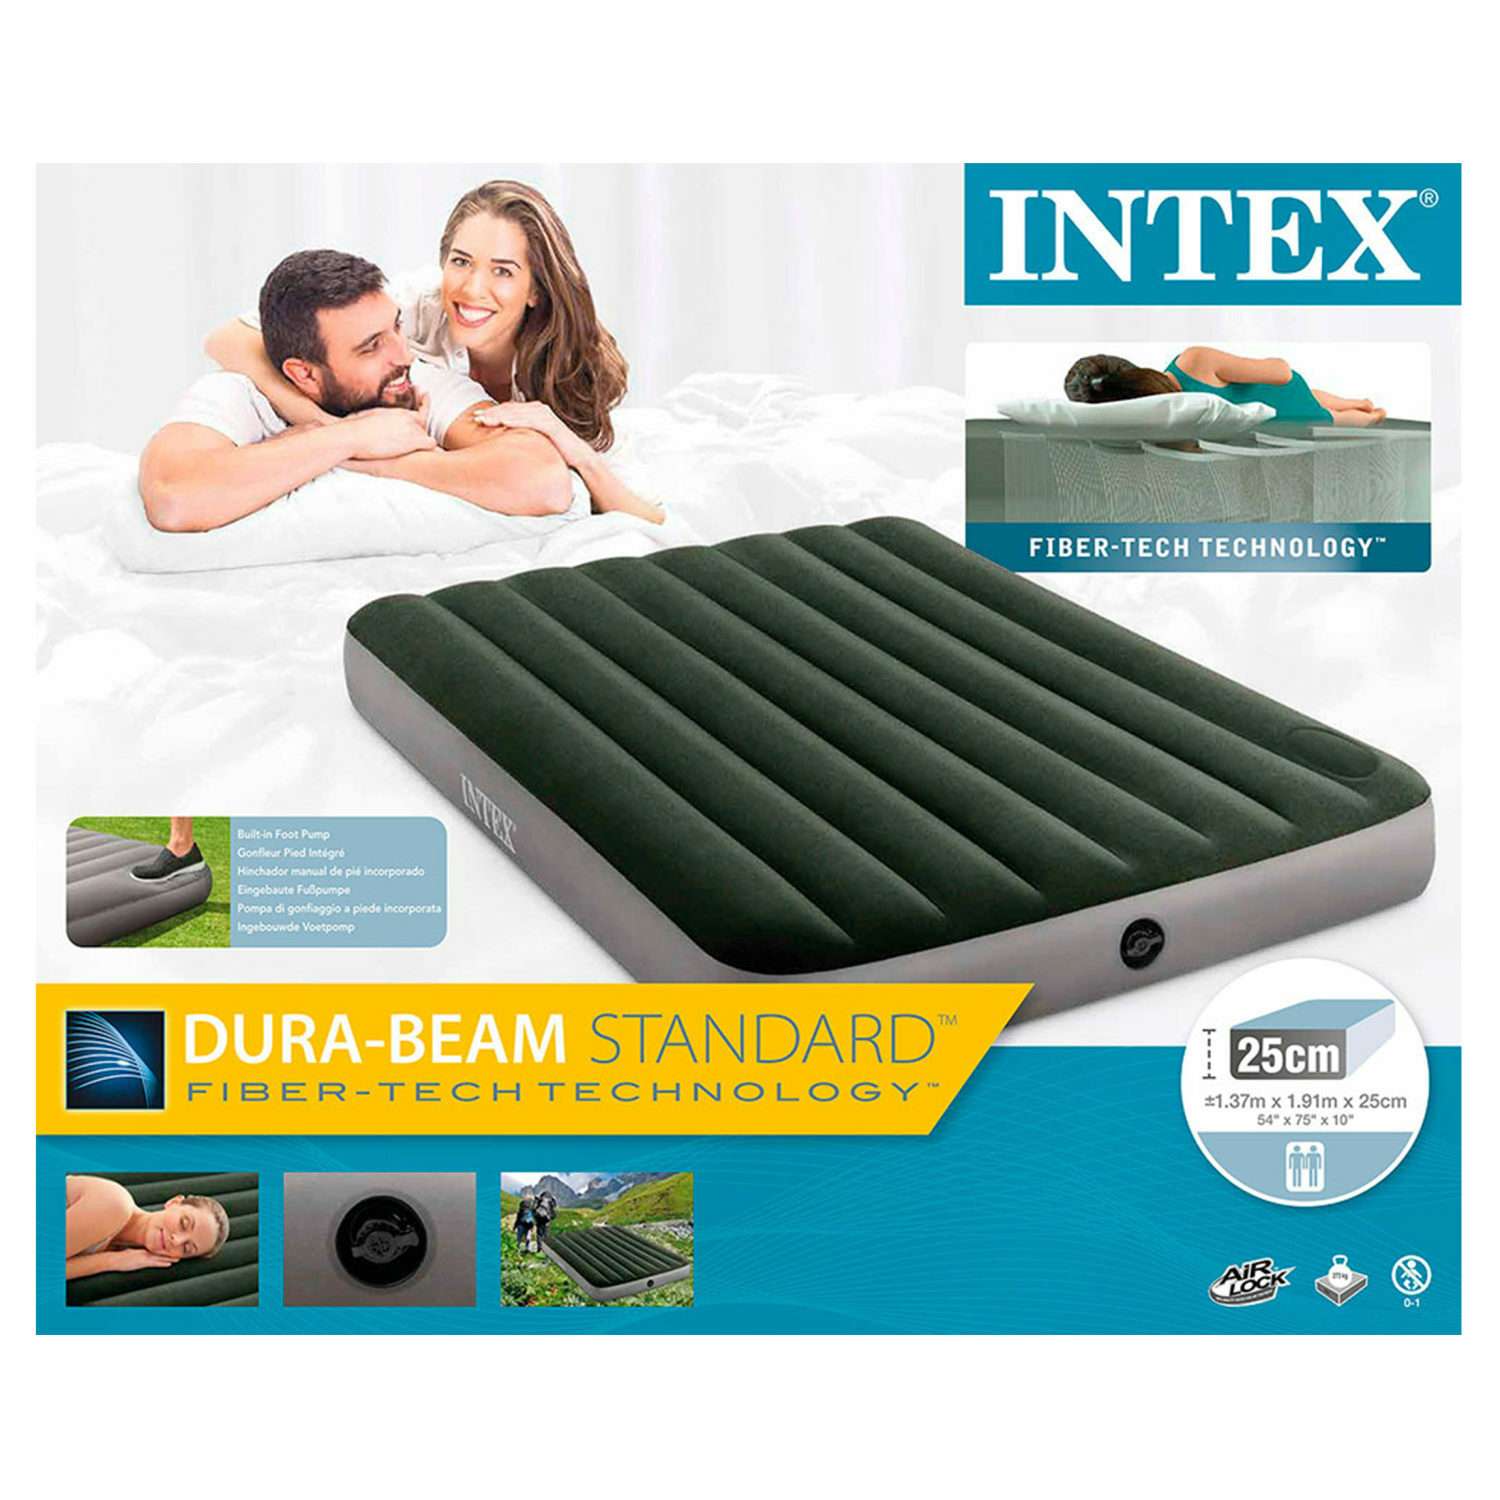 Надувной матрас INTEX кровать дюра бим дауни фул с встроенным насосом 137х191х25 см - фото 4